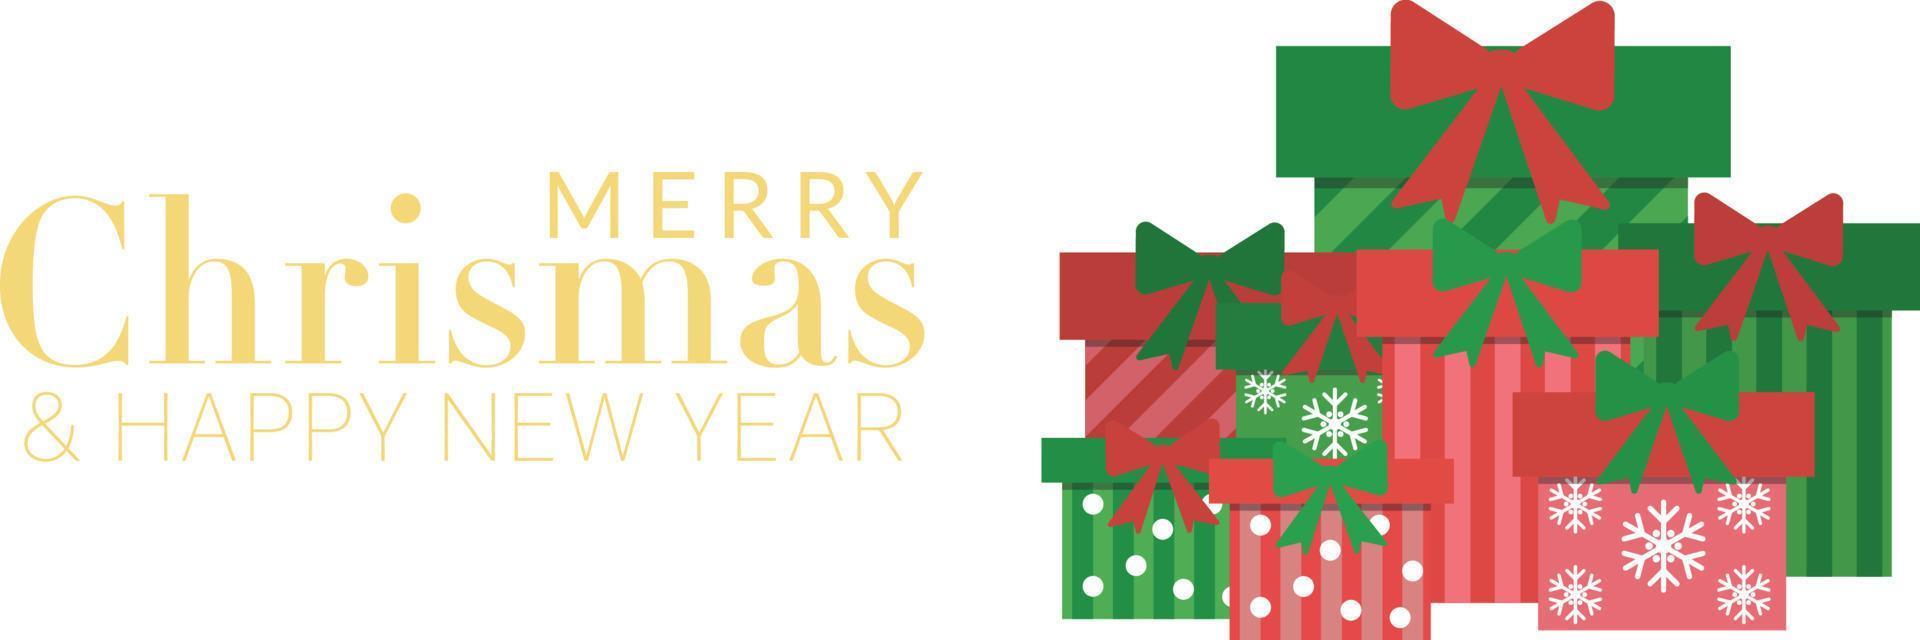 joyeux noël et bonne année carte de voeux vacances avec ensemble de cadeau rouge et vert avec fond de ruban vecteur